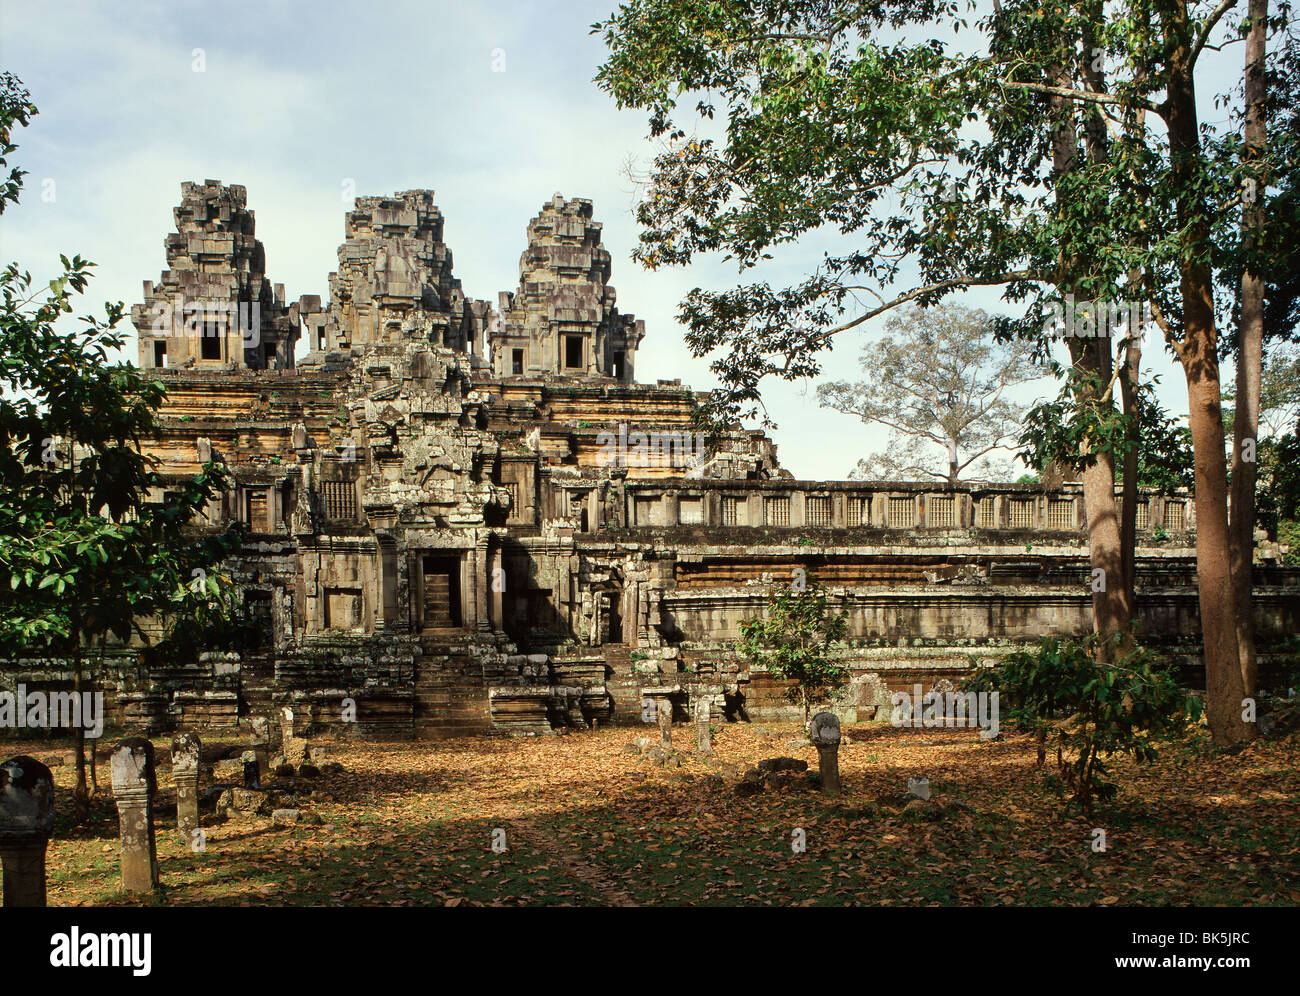 TA Keo, aus dem 10. und 11. Jahrhundert, Angkor, UNESCO-Weltkulturerbe, Kambodscha, Indochina, Südostasien, Asien Stockfoto